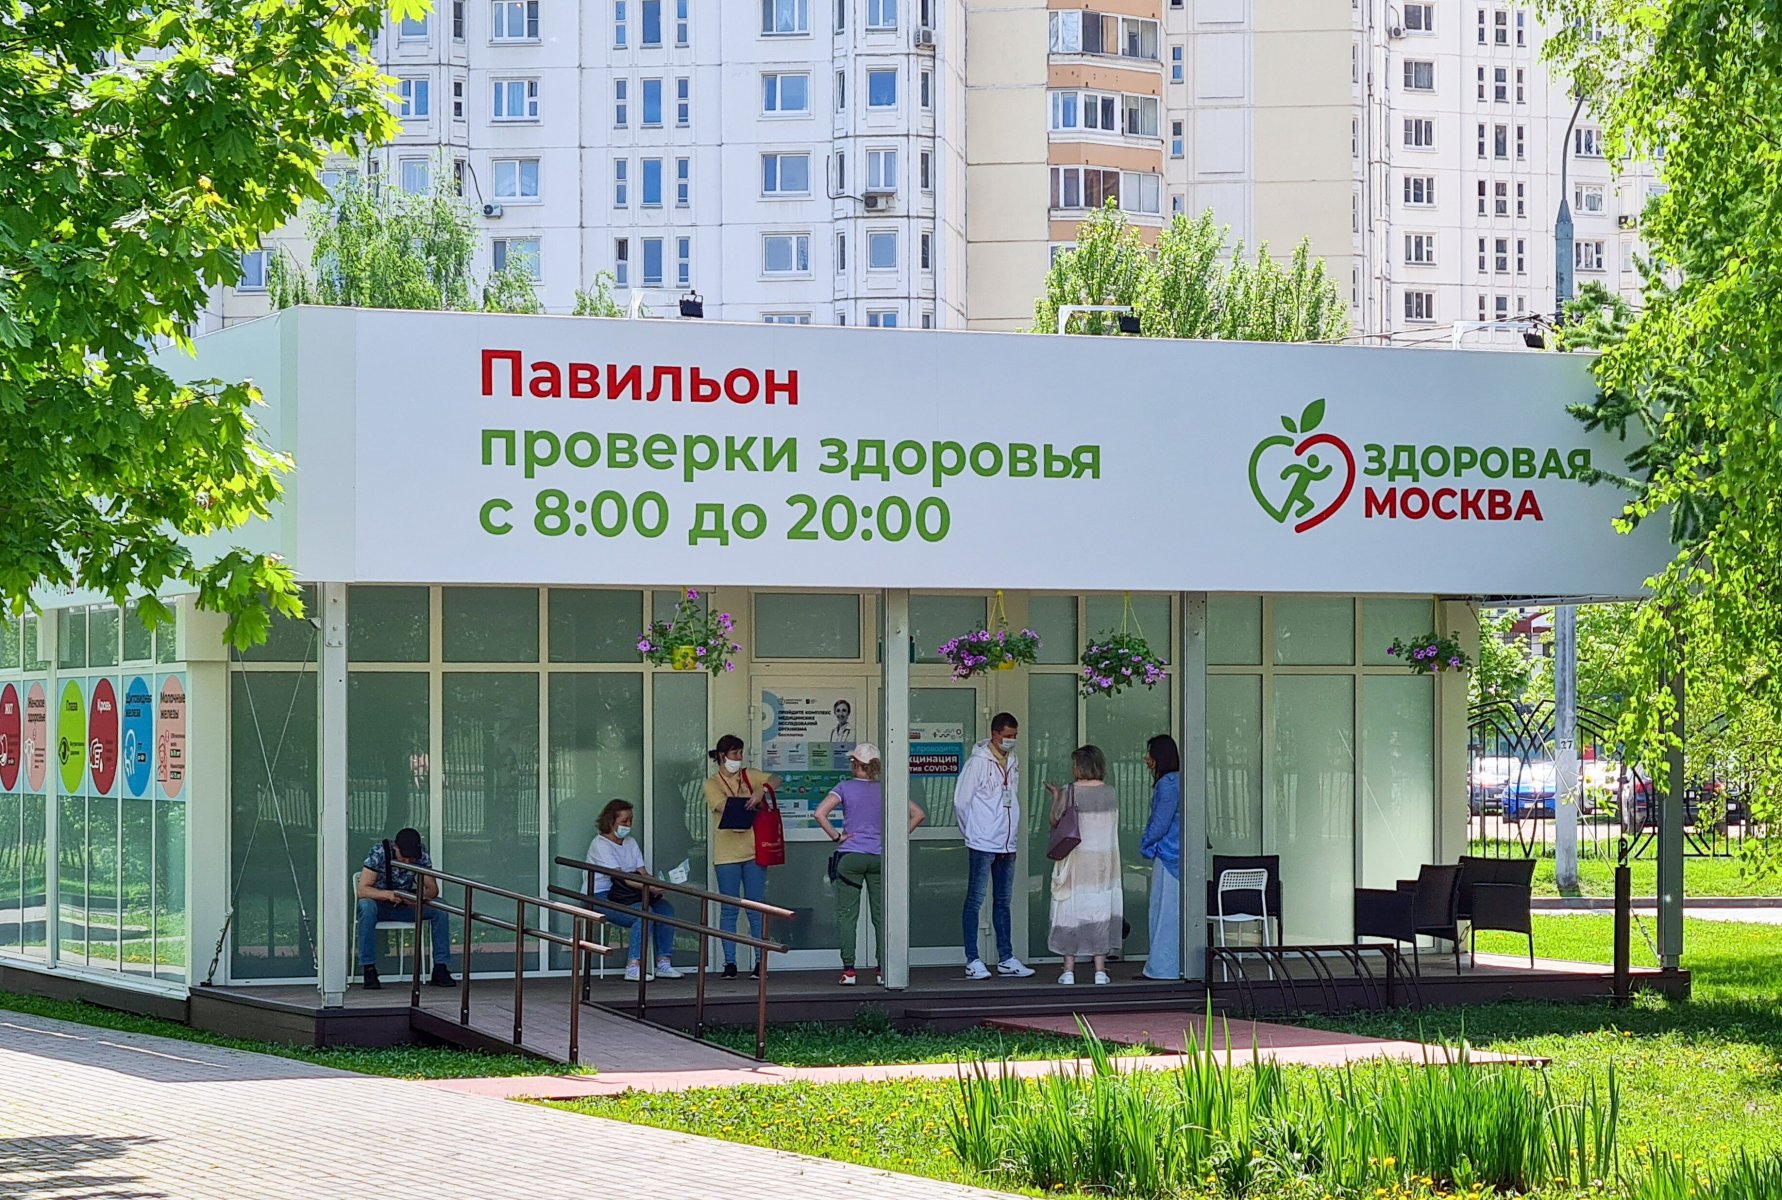 Павильоны «Здоровая Москва» переходят под работу только для вакцинации от коронавируса